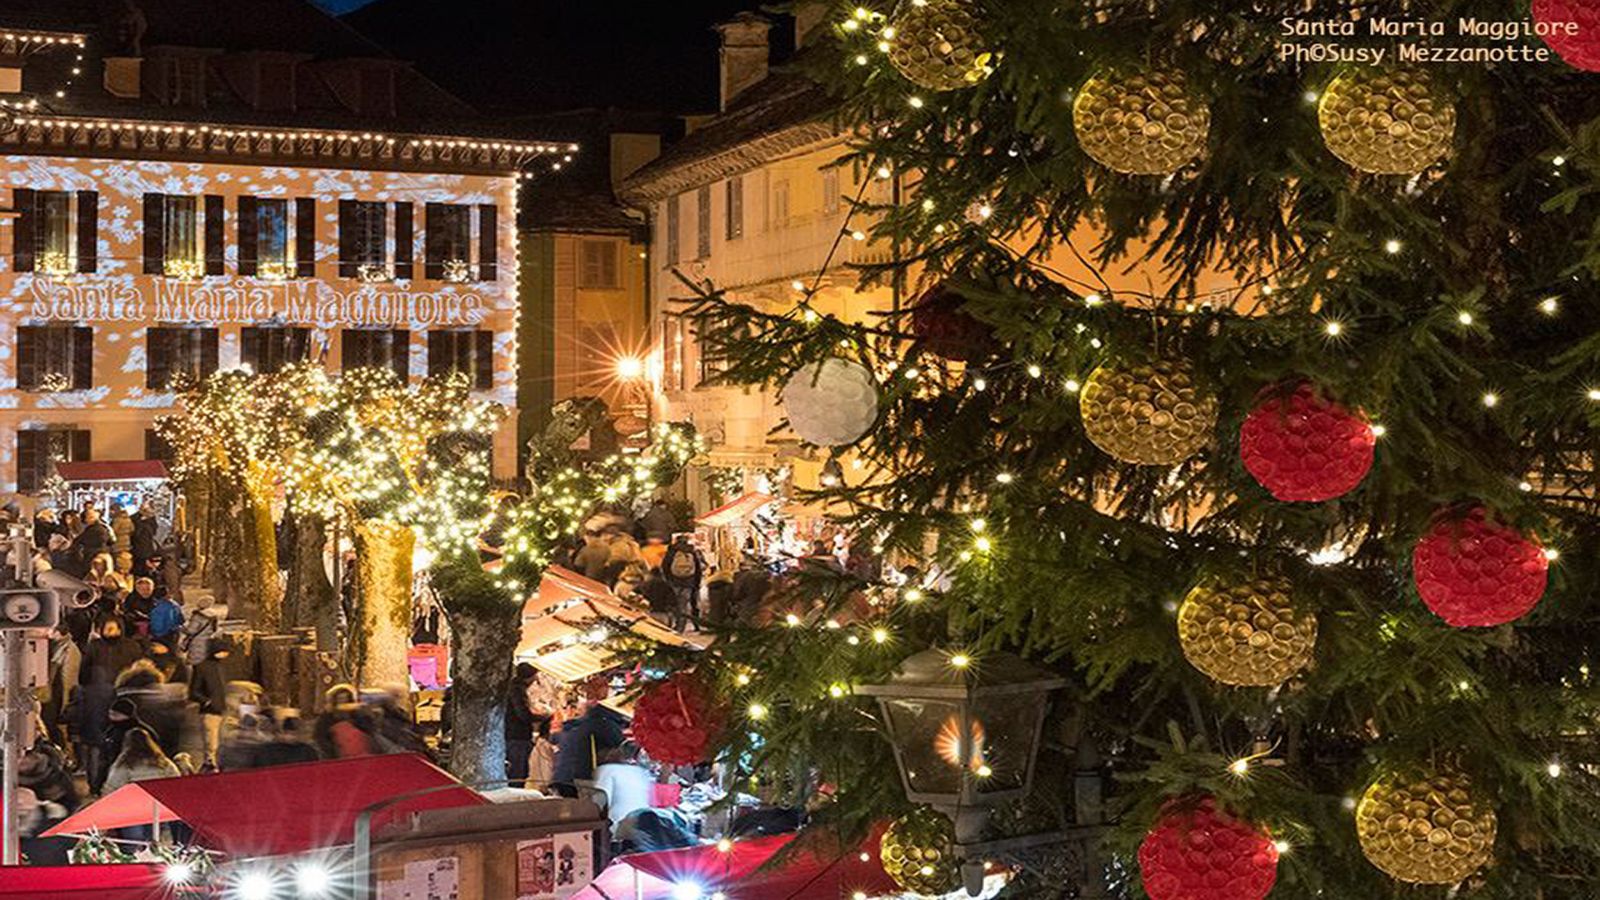 Christmas market Santa Maria Maggiore